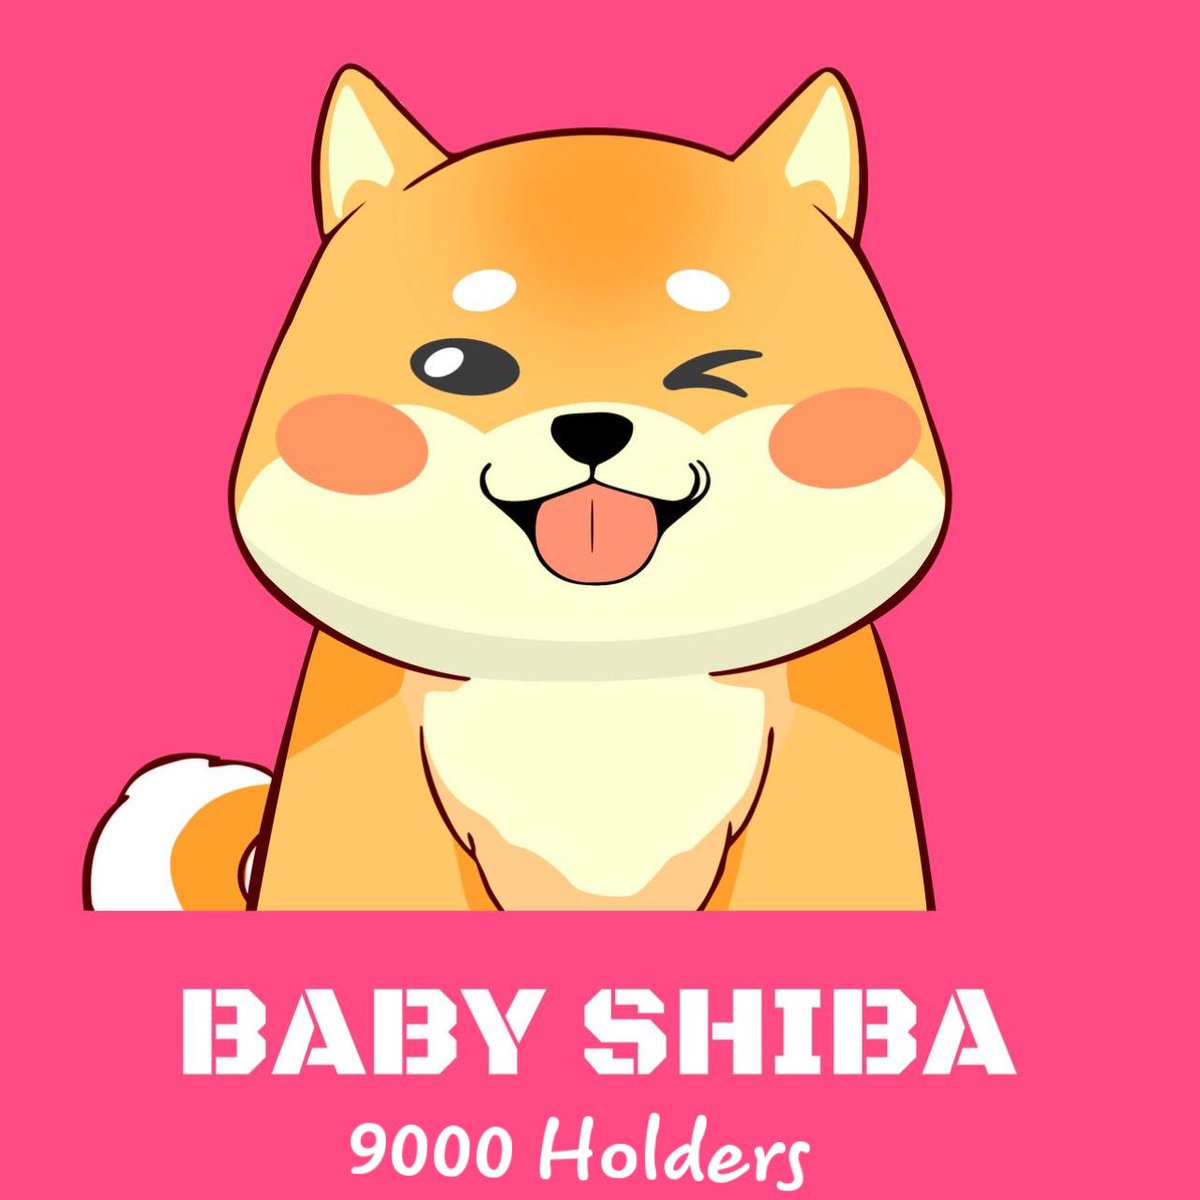 Hãy thưởng thức hình ảnh đáng yêu của chú chó Shiba Inu, được biết đến với tính cách thông minh và trung thành. Bạn sẽ không thể cầm lòng trước những tư thế ngộ nghĩnh của chú chó này!